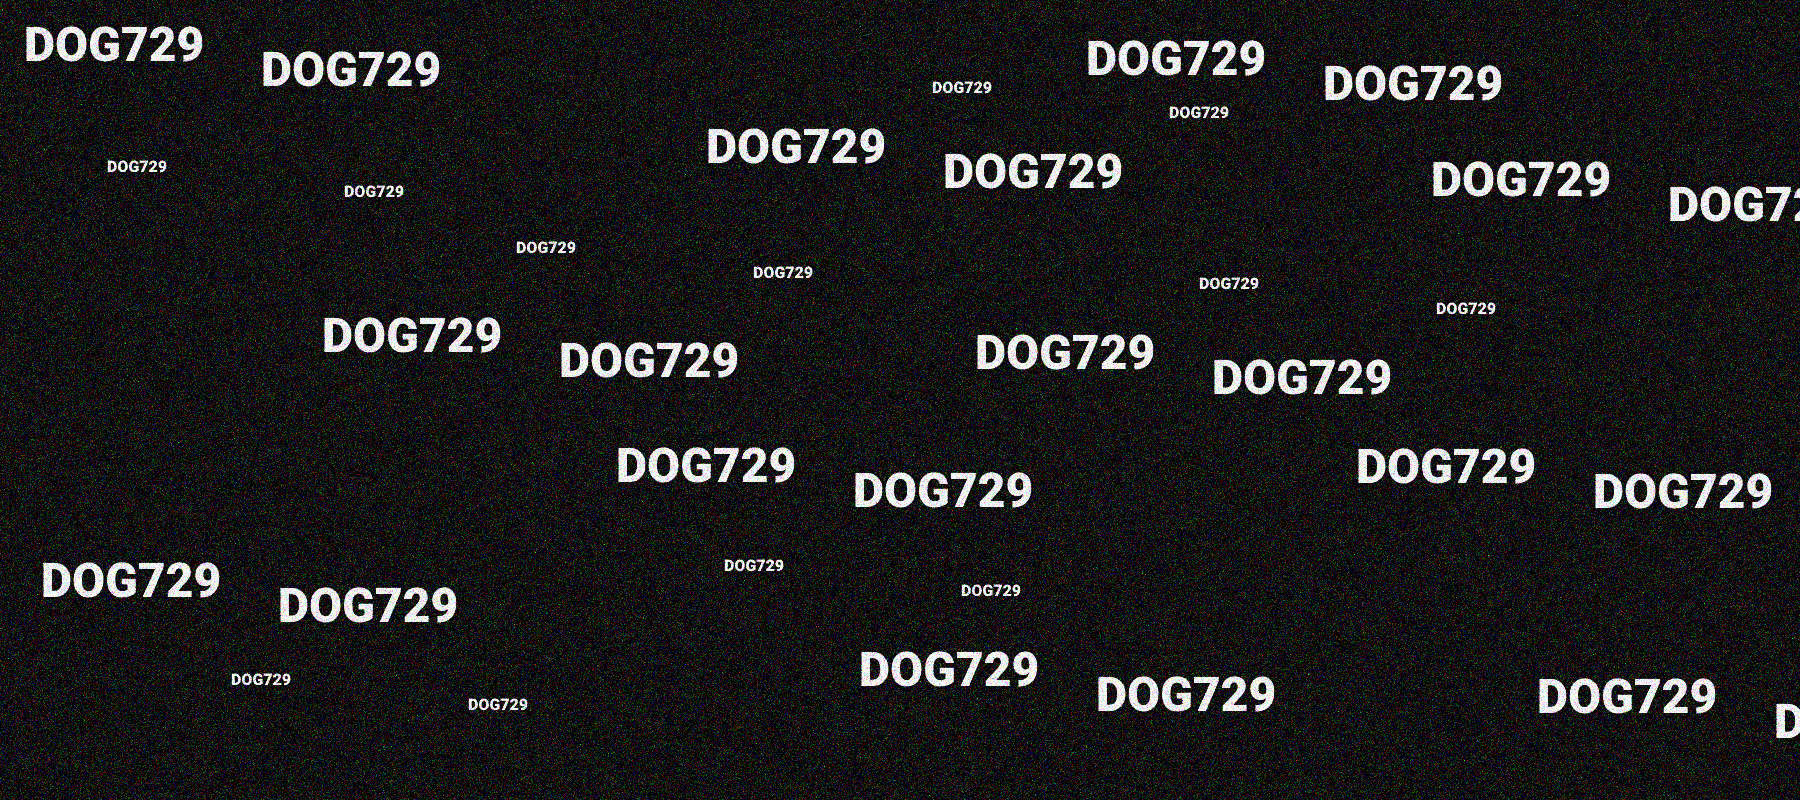 DOG729 bannière